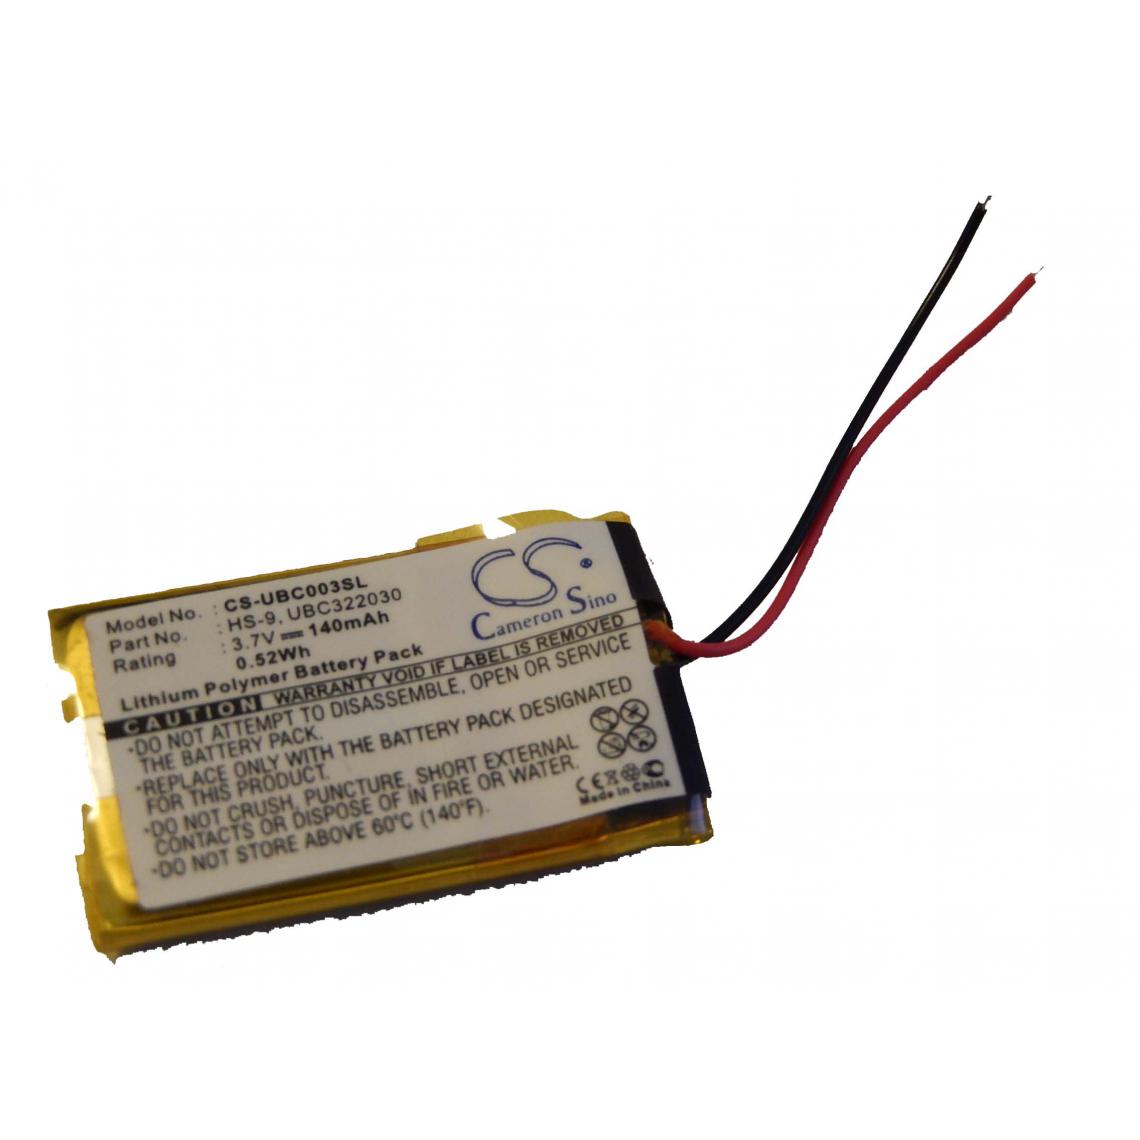 Vhbw - Batterie 140mAh (3.7V) vhbw pour Ultralife UBC322030, UBP008 Remplace: UBC322030, HS-9 - Autre appareil de mesure